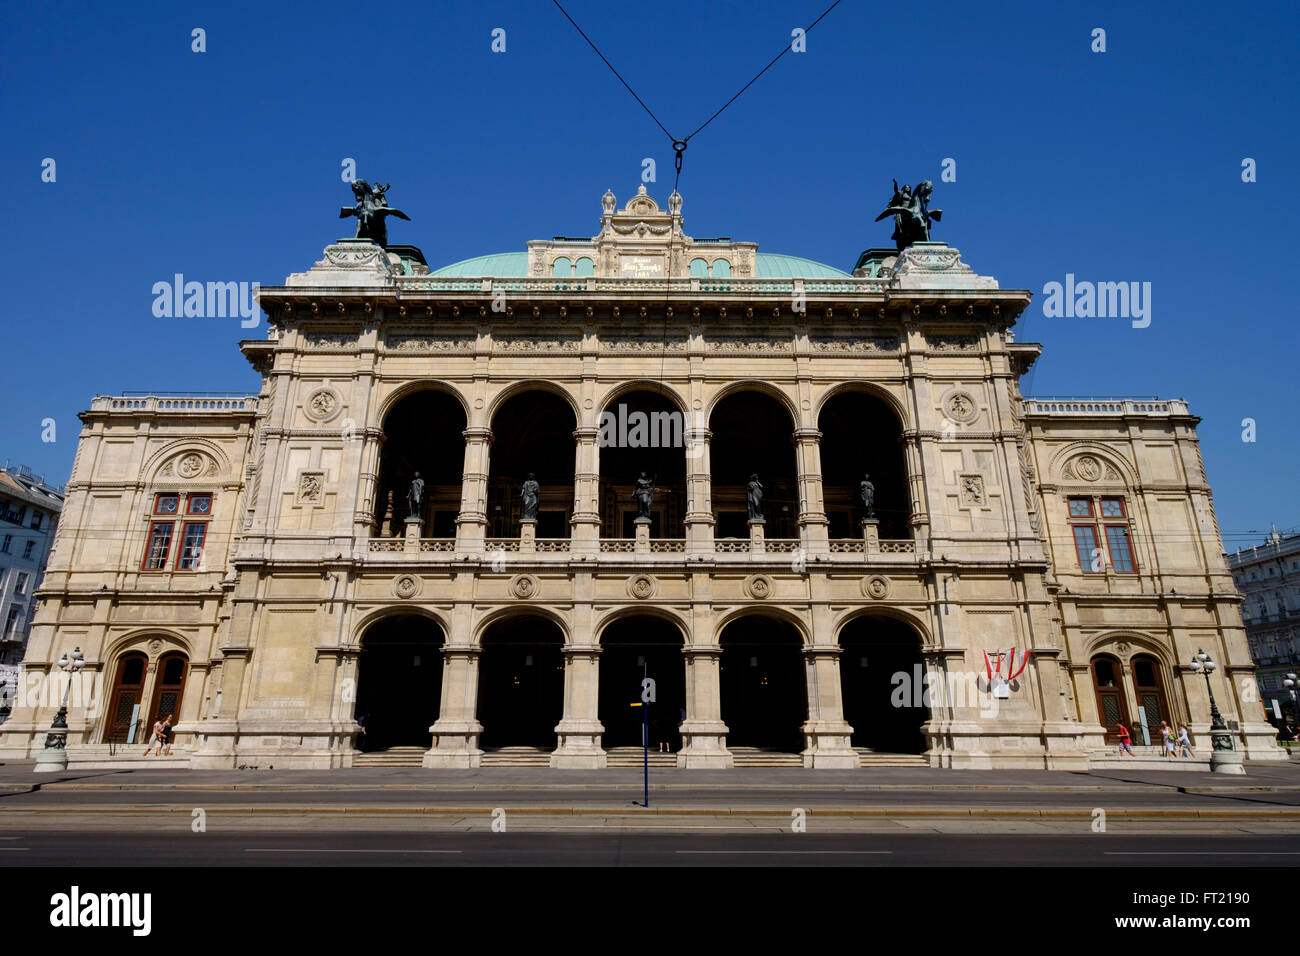 Maison de l'Opéra de Vienne à Vienne, Autriche, Europe Banque D'Images